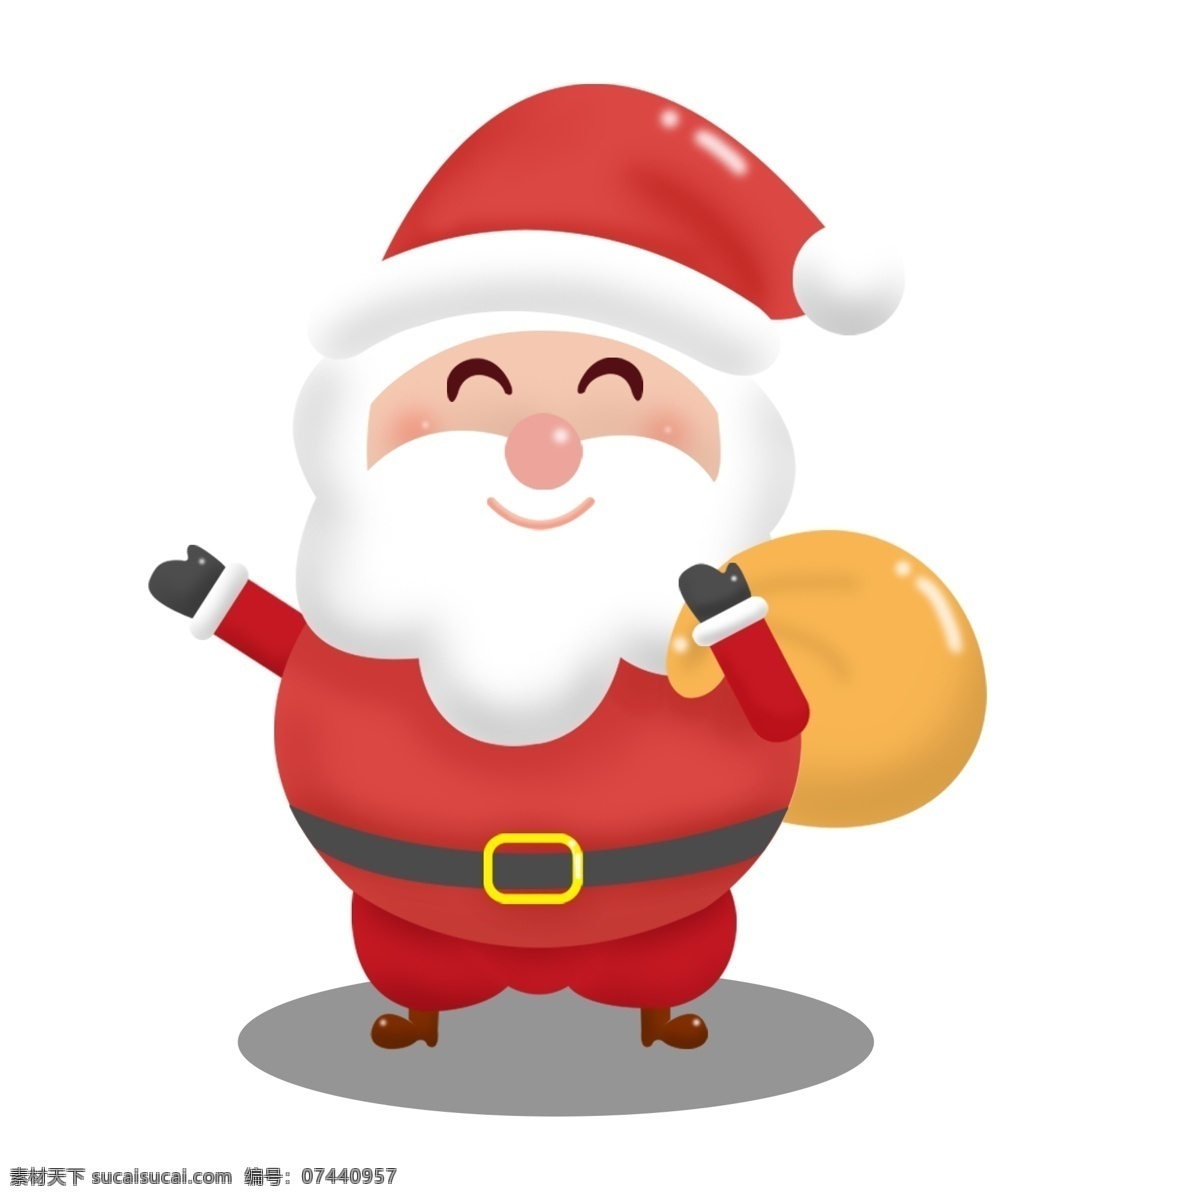 圣诞老人 卡通 可爱 商用 元素 礼物 和蔼 可商用 开心